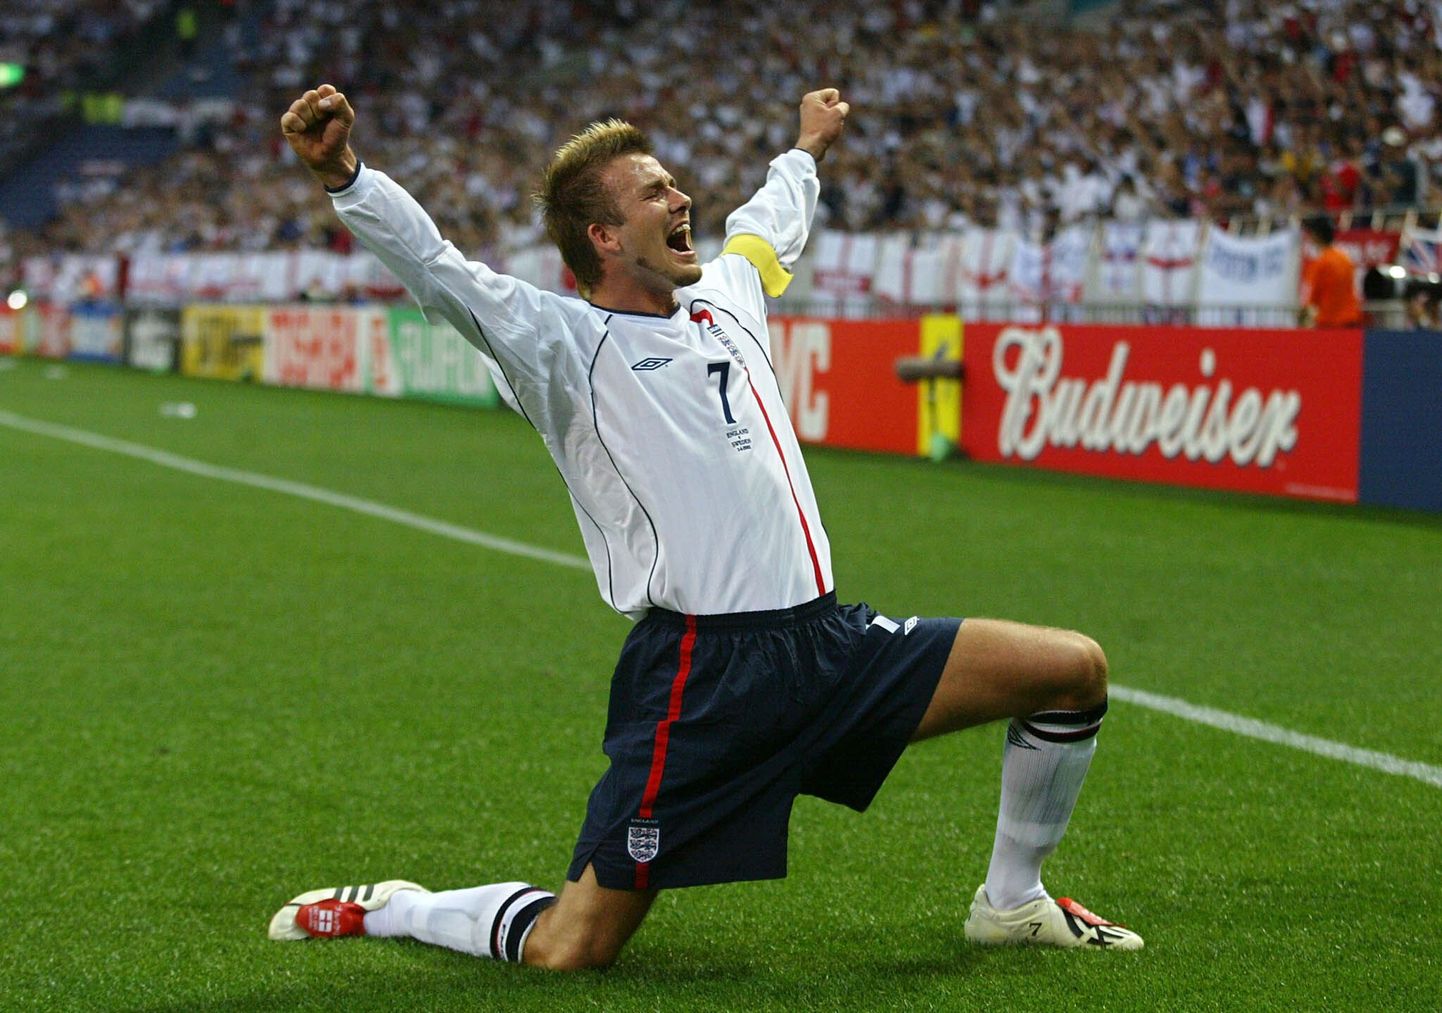 Inglismaa koondise särgis pidas Beckham 115 kohtumist ja lõi selle aja jooksul 17 väravat. Aastaid kandis ta koondises ka kaptenipaela.